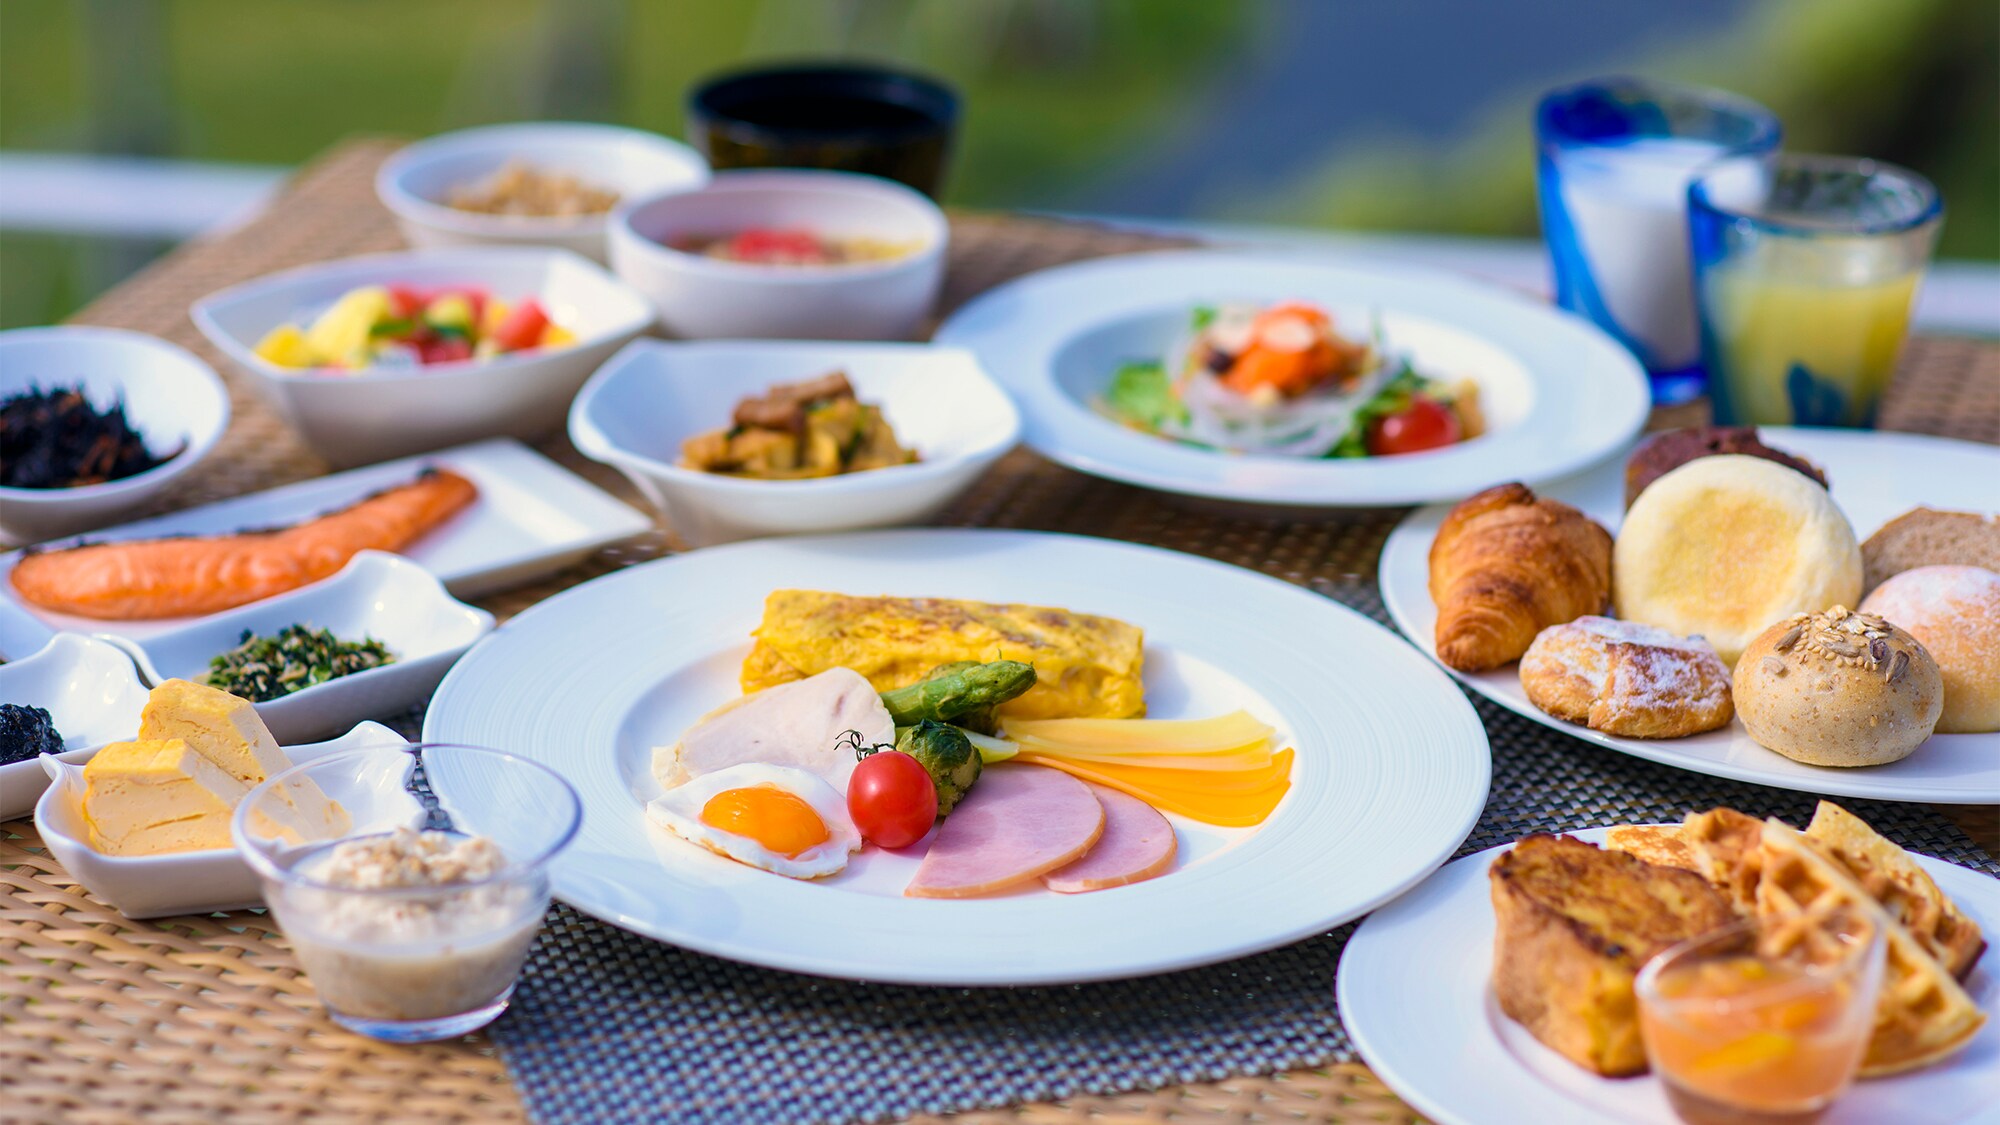 [Sarapan] Nikmati lebih dari 60 jenis hidangan dalam gaya prasmanan dengan tema bahan-bahan lokal Okinawa dan makanan sehat.